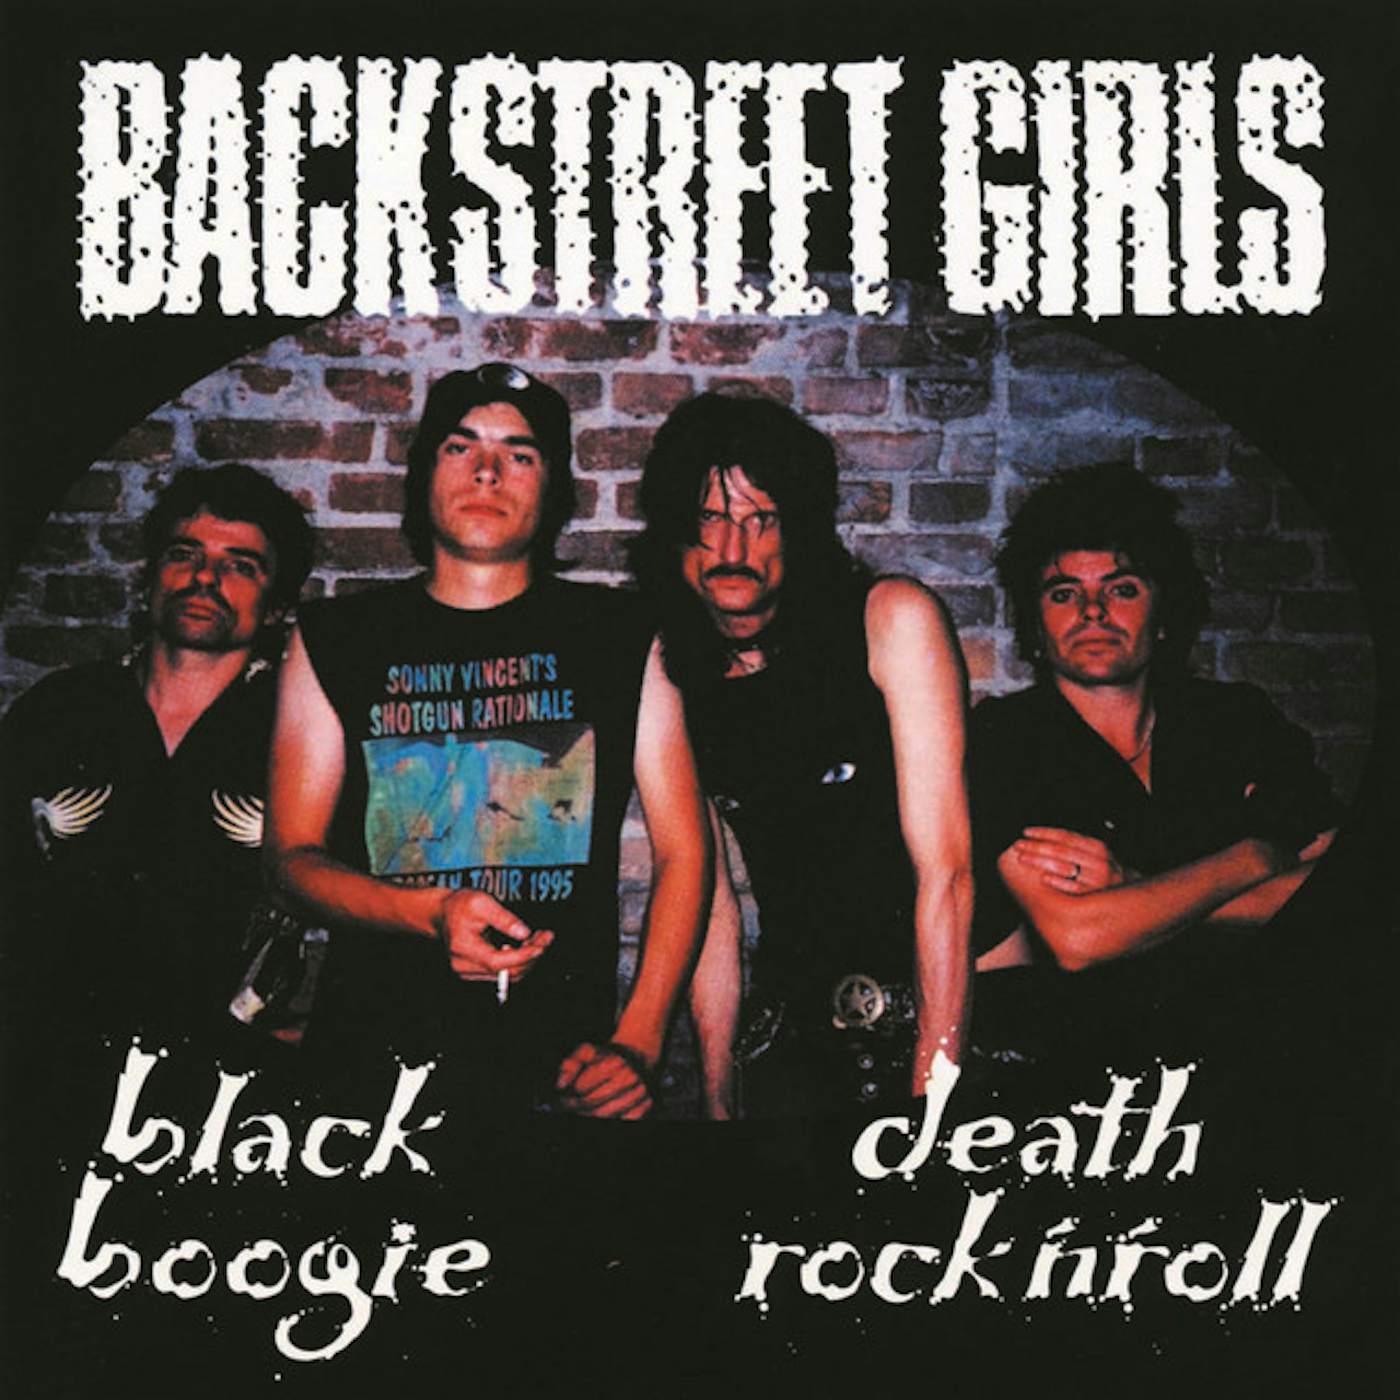 Backstreet Girls BLACK BOOGIE DEATH ROCK N ROLL CD